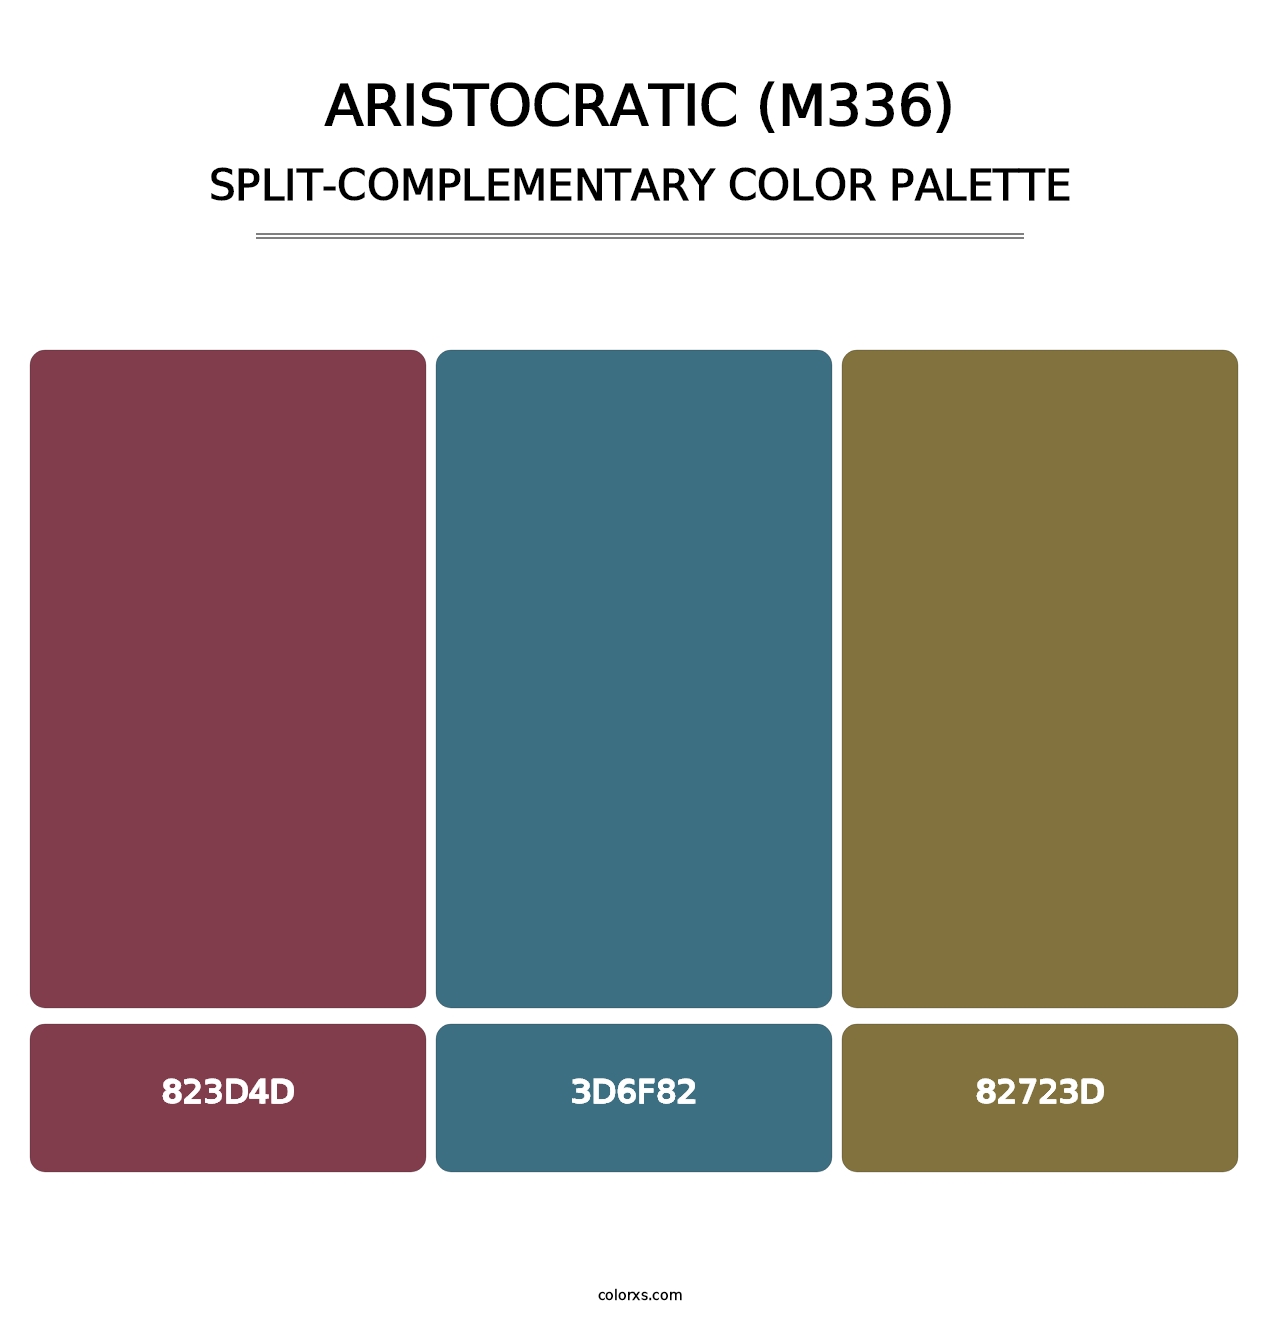 Aristocratic (M336) - Split-Complementary Color Palette